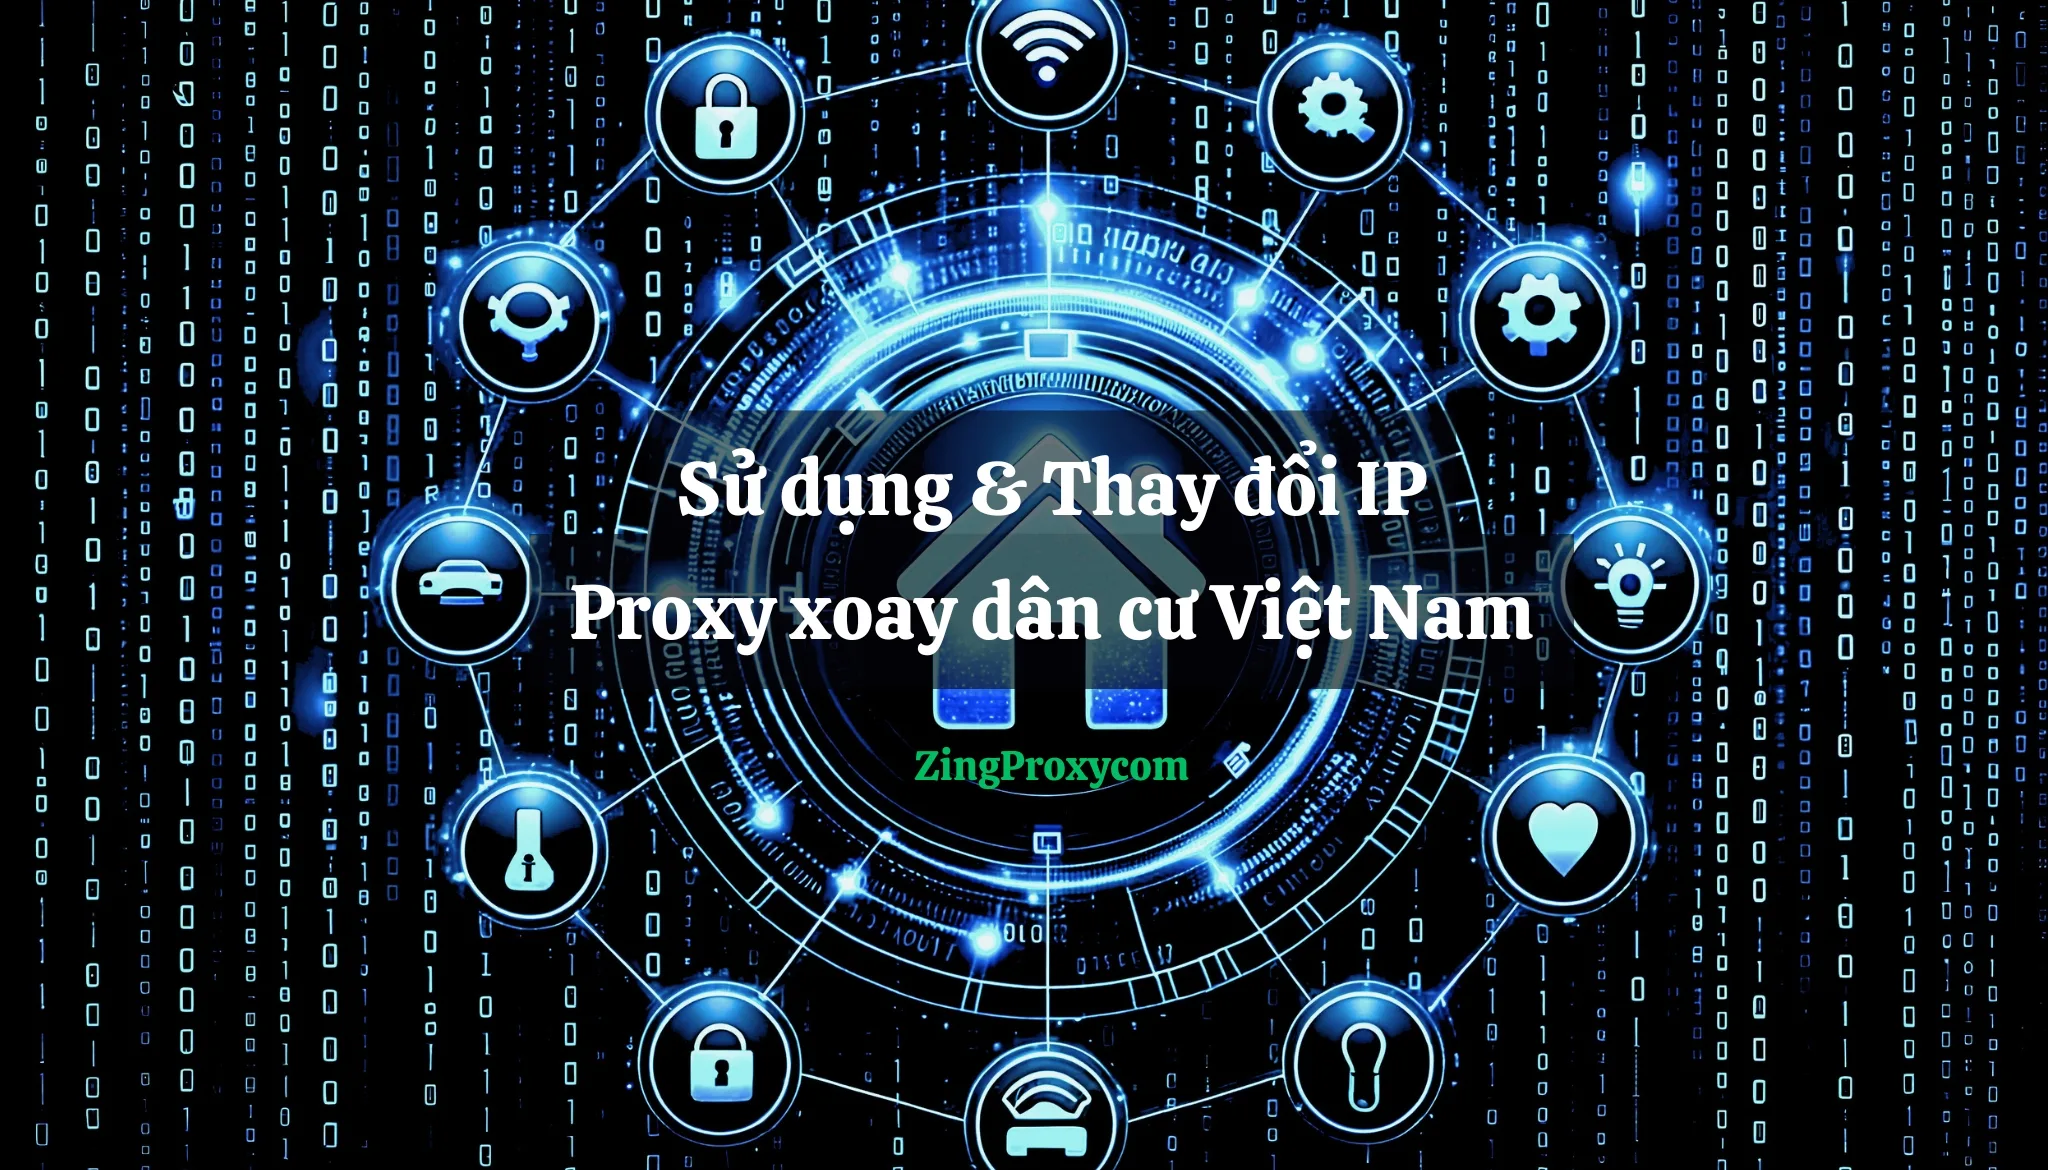 Proxy xoay dân cư Việt Nam